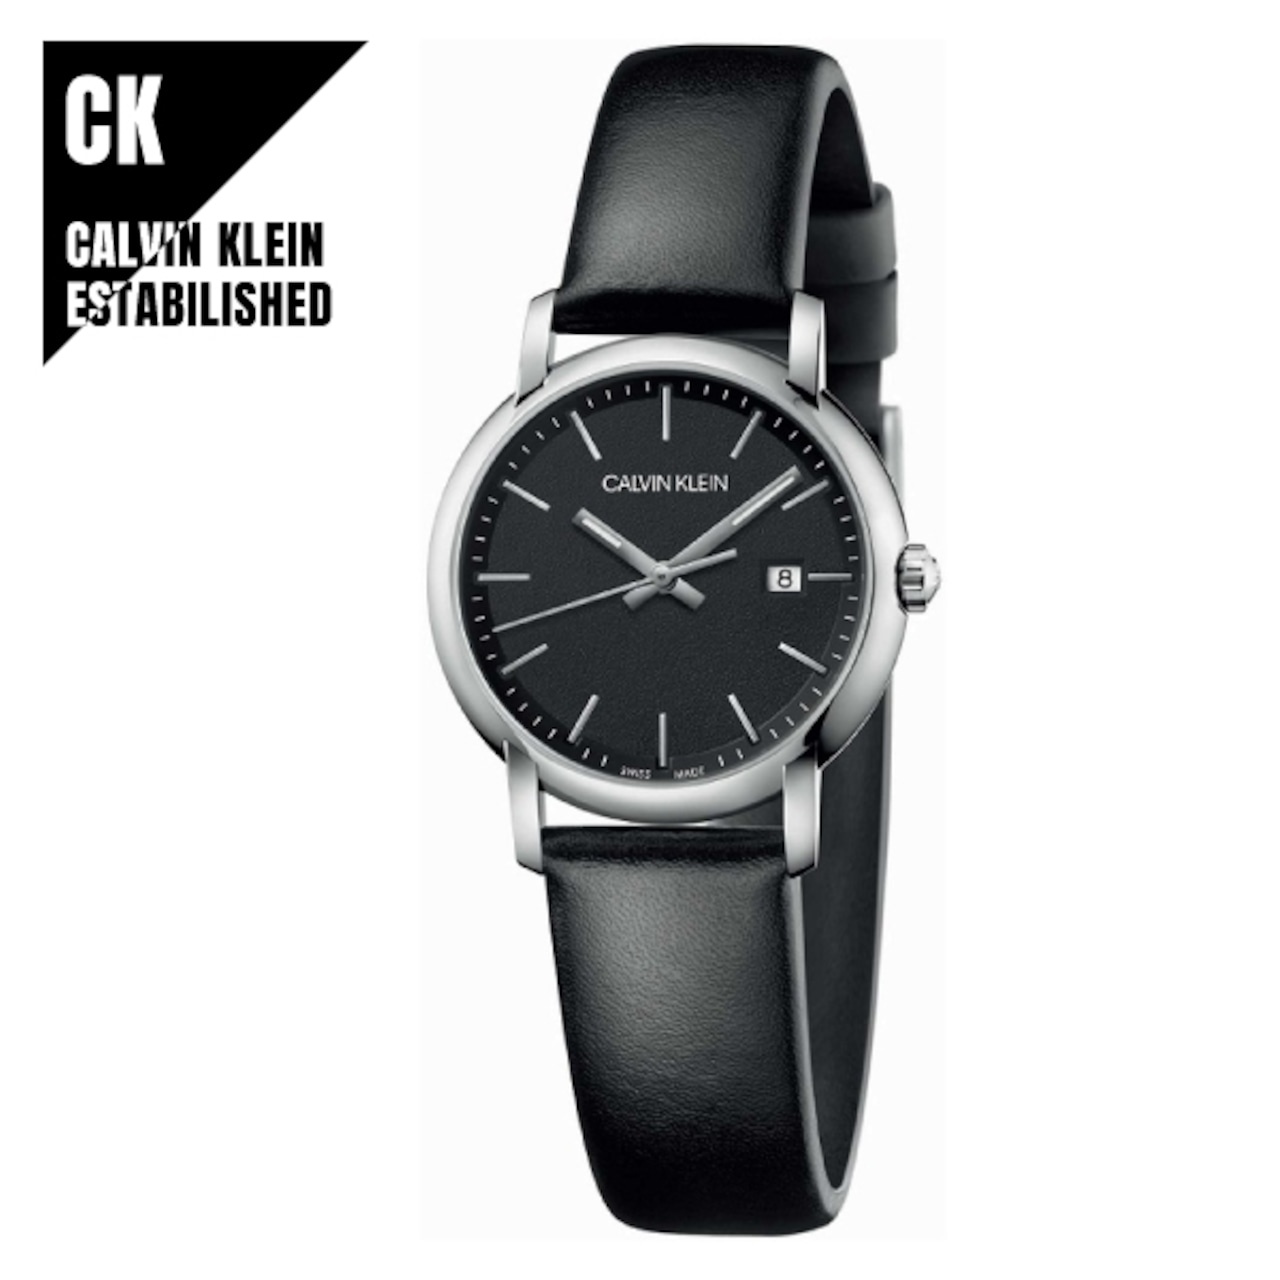 CALVIN KLEIN カルバンクライン CK K9H231C1 ESTABLISHED エスタブリッシュド 腕時計 レディース